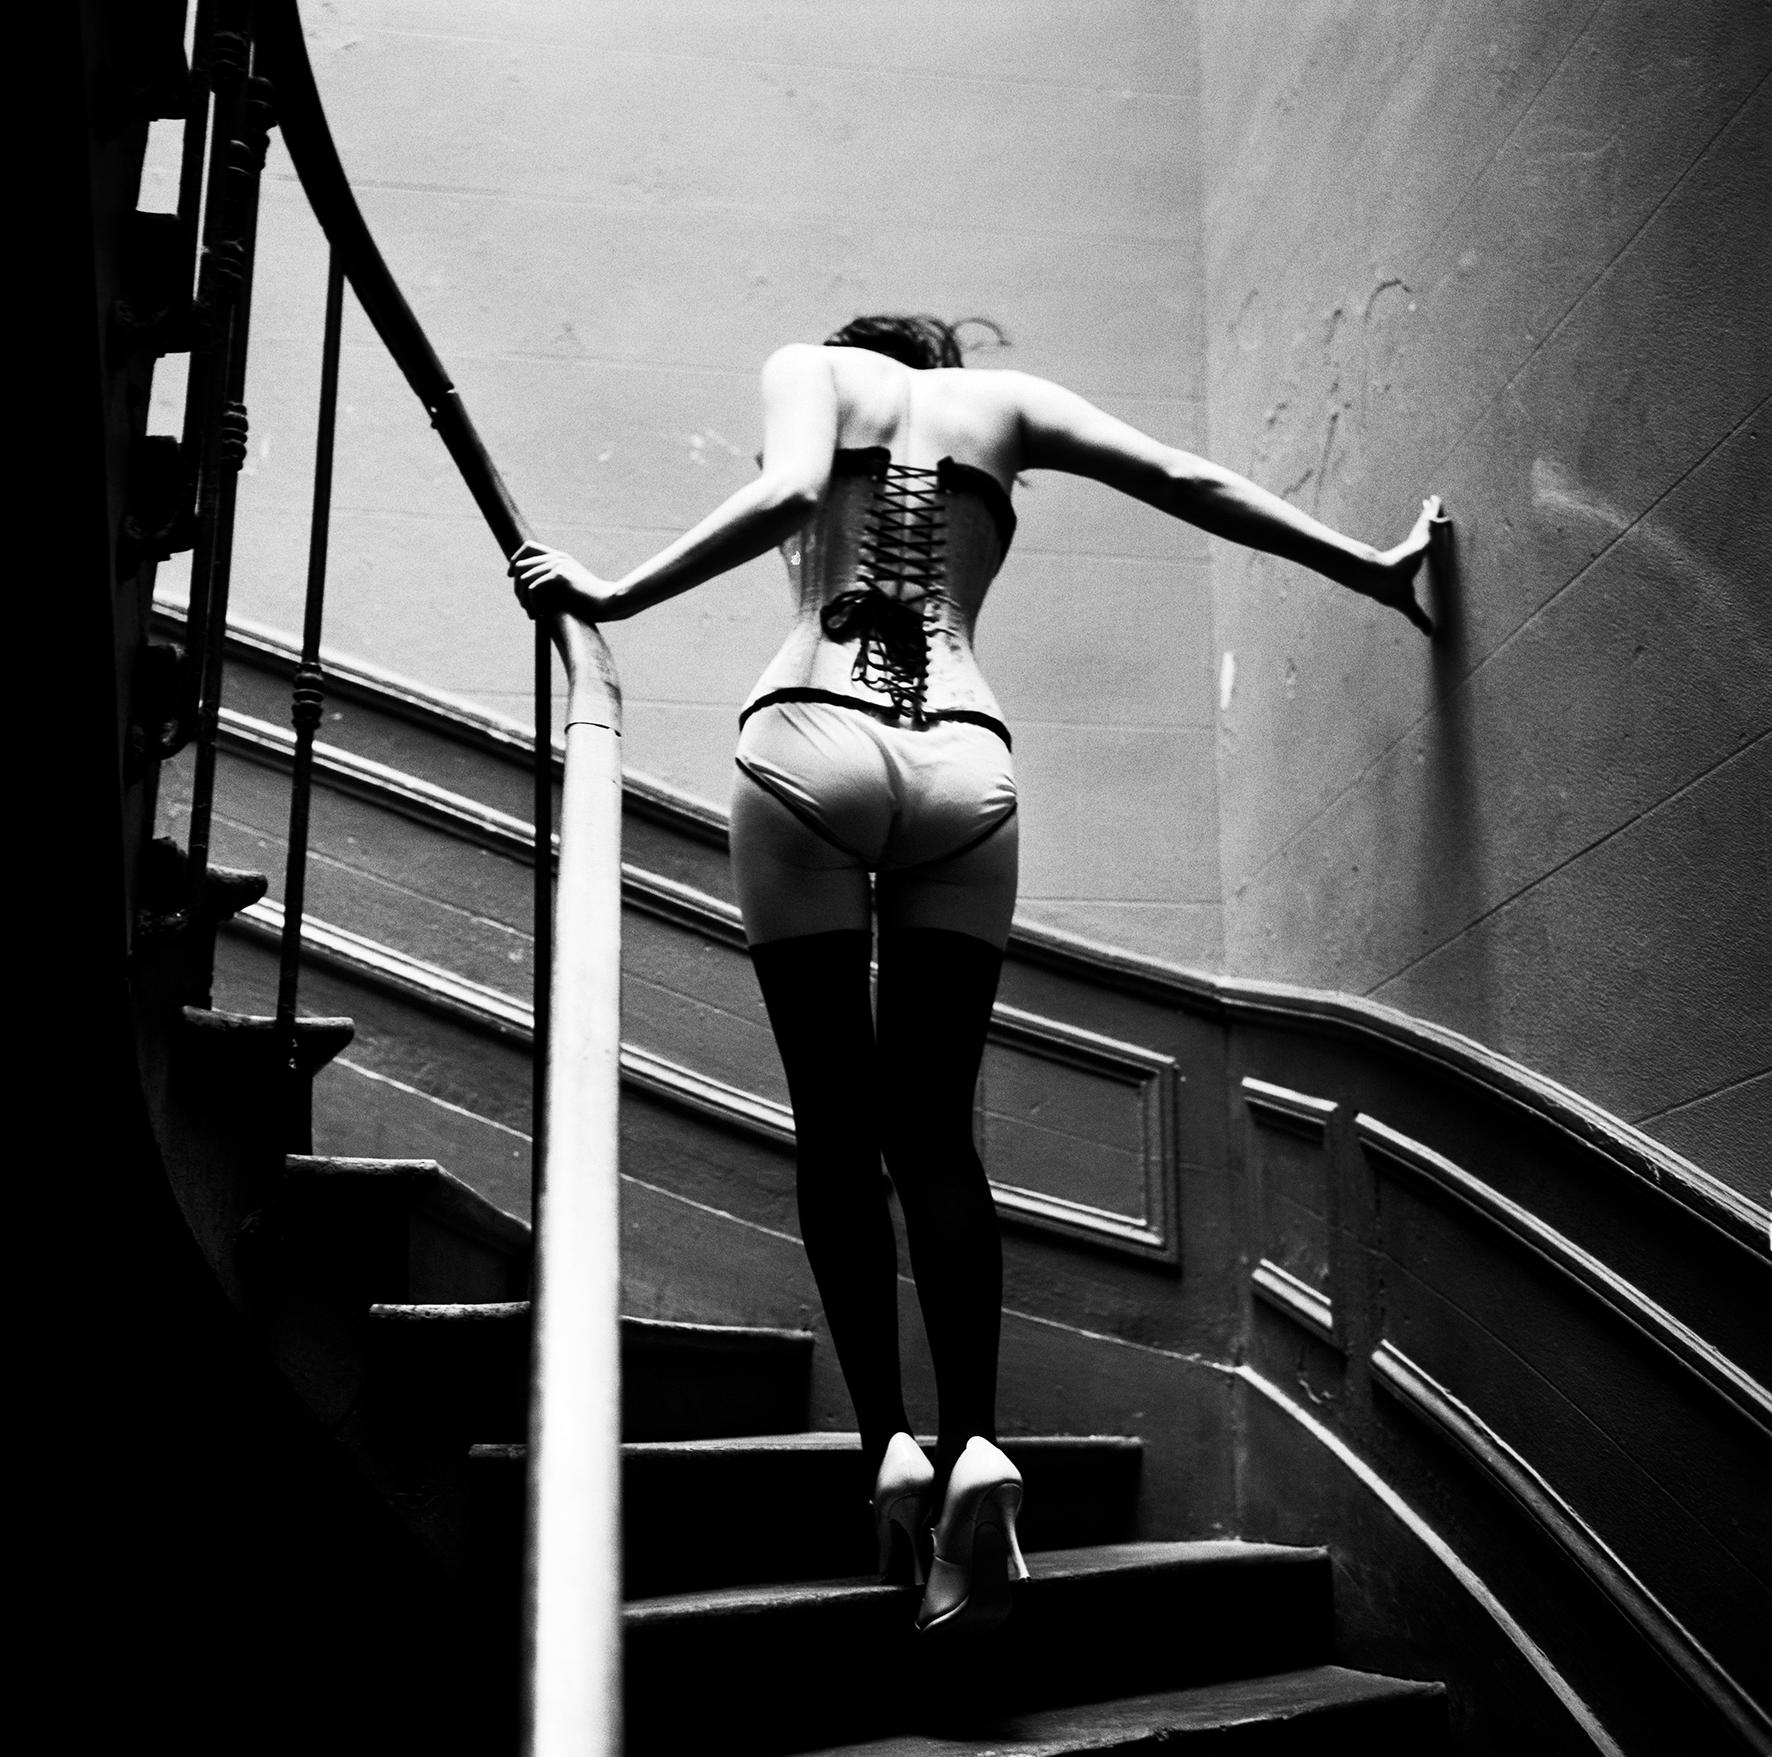 Ellen von Unwerth Black and White Photograph - Upstairs, Paris, Celebrity, black and white photography, nude